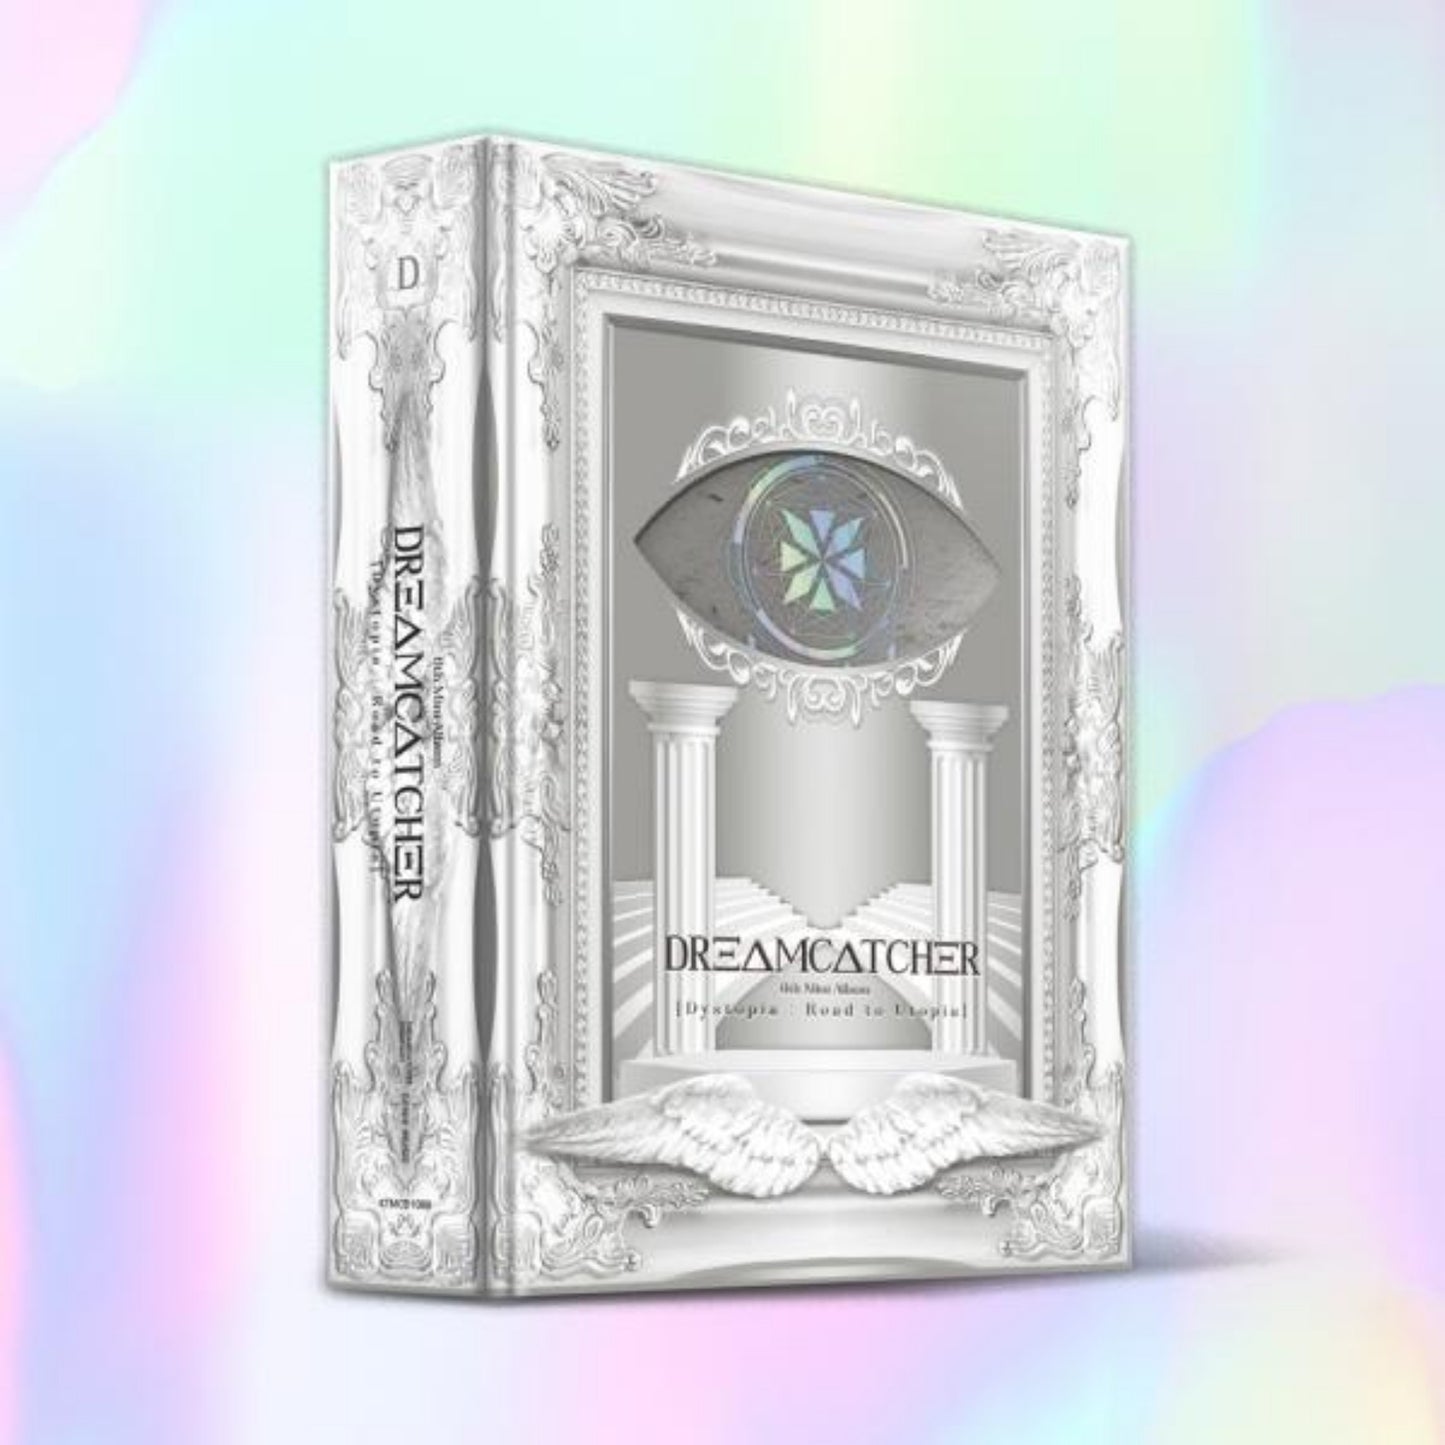 دريمكشر-الالبوم السادس | (ONE) Dreamcatcher - 6th Mini Album Dystopia: Road to Utopia First Limited Edition